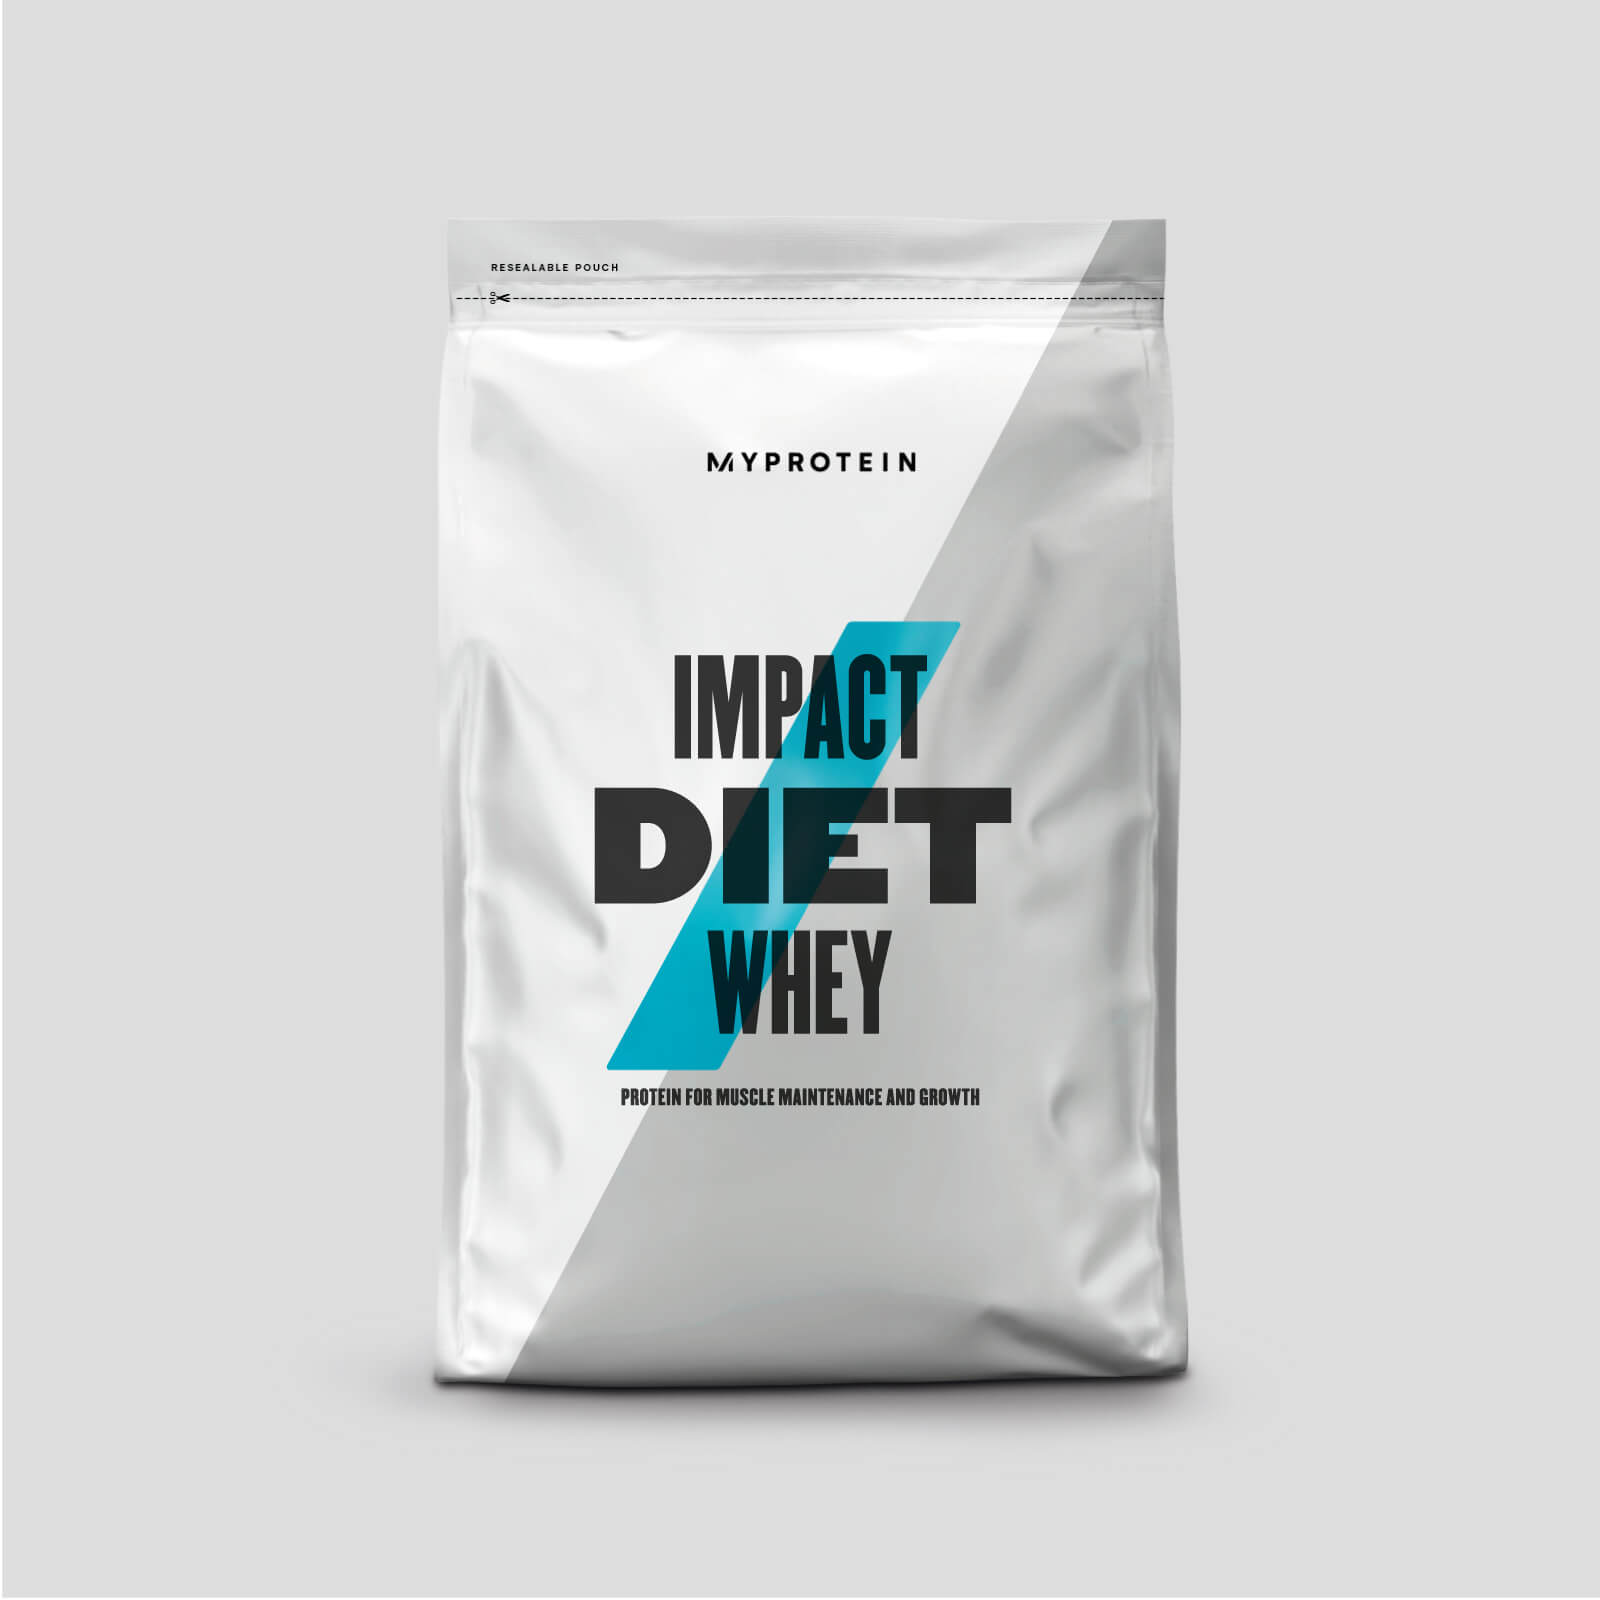 Myprotein Impact Diet Whey - 250g - Chocolate Mint